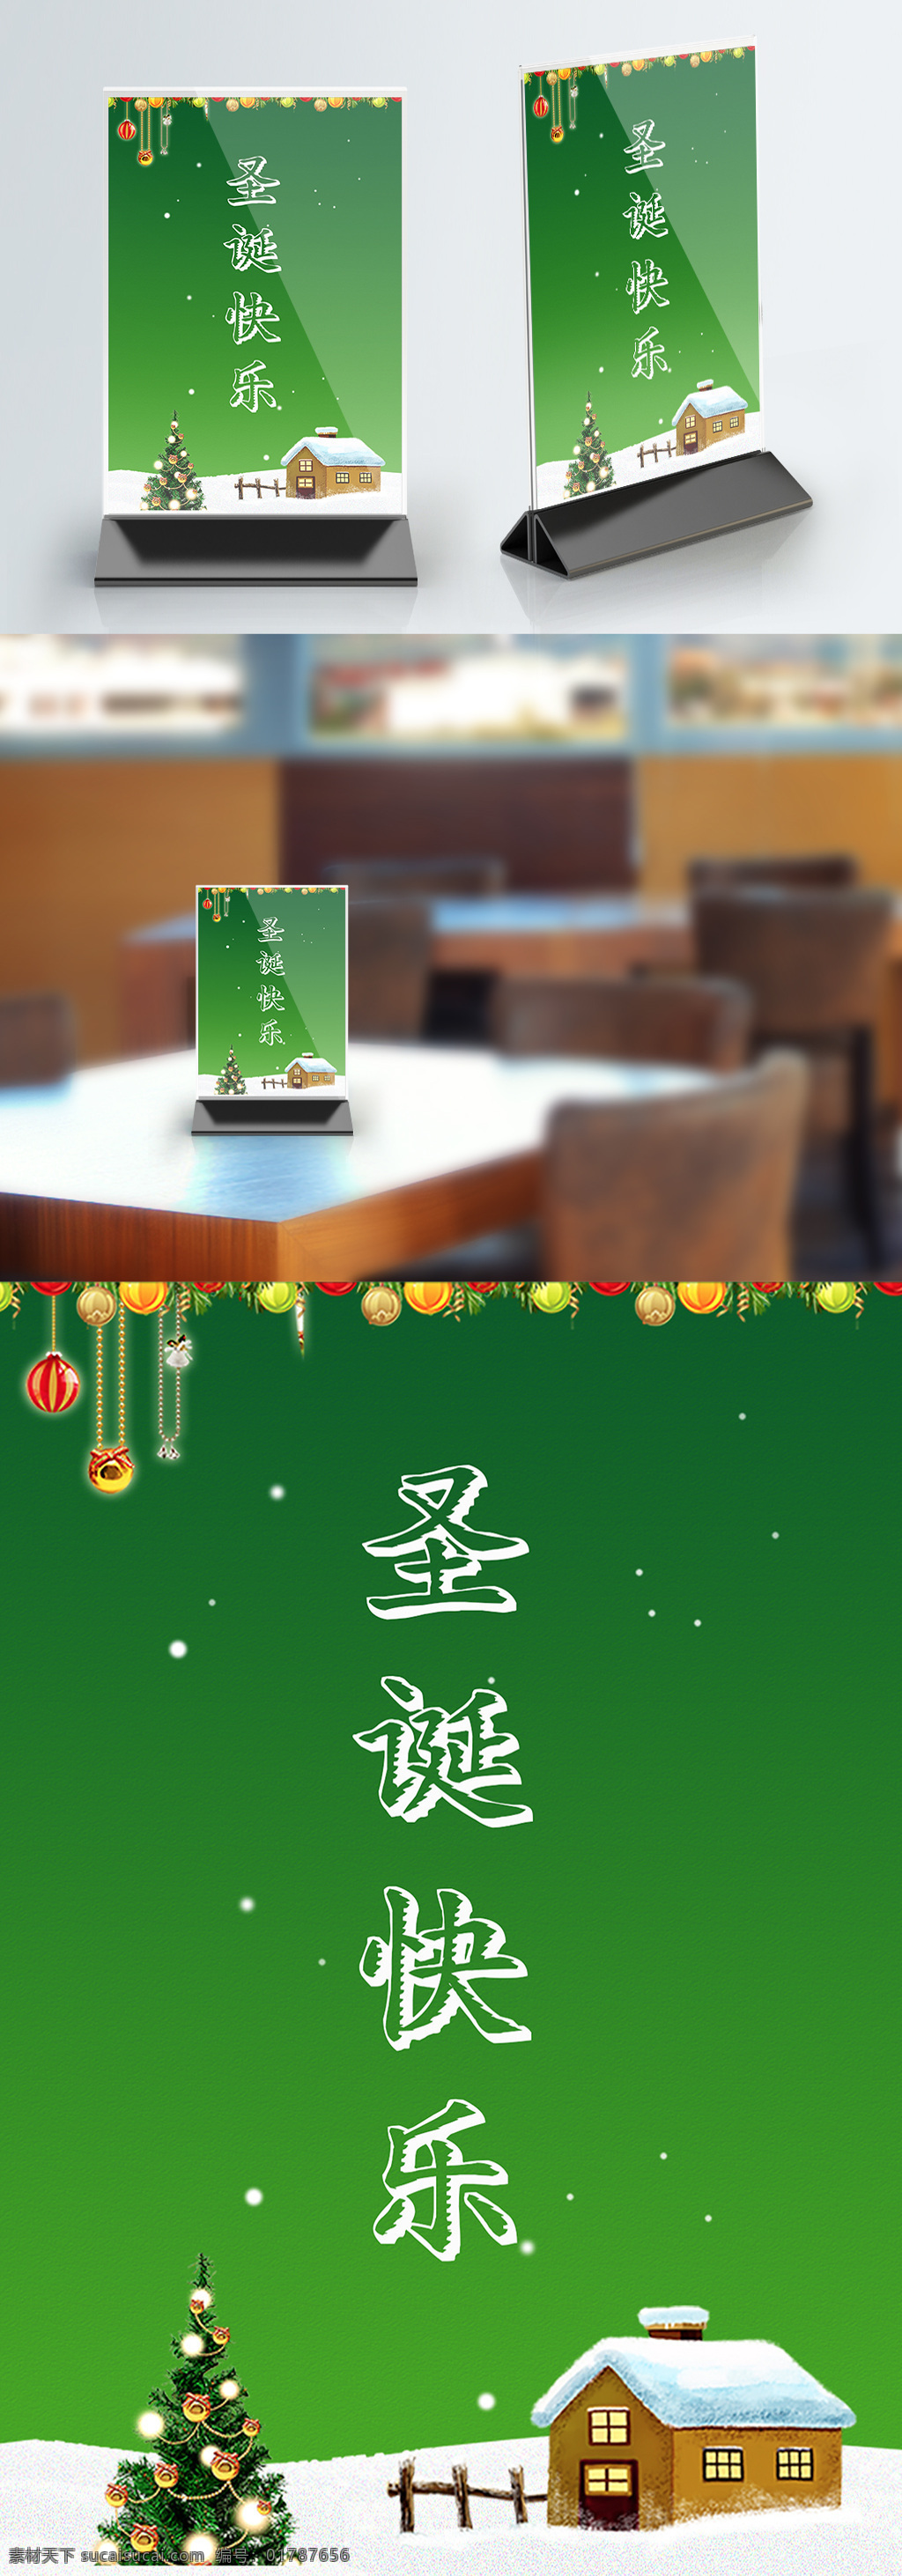 简约 小 清新 圣诞节 桌 卡 模板 圣诞快乐 圣诞节桌卡 台牌设计 桌牌 节日桌卡